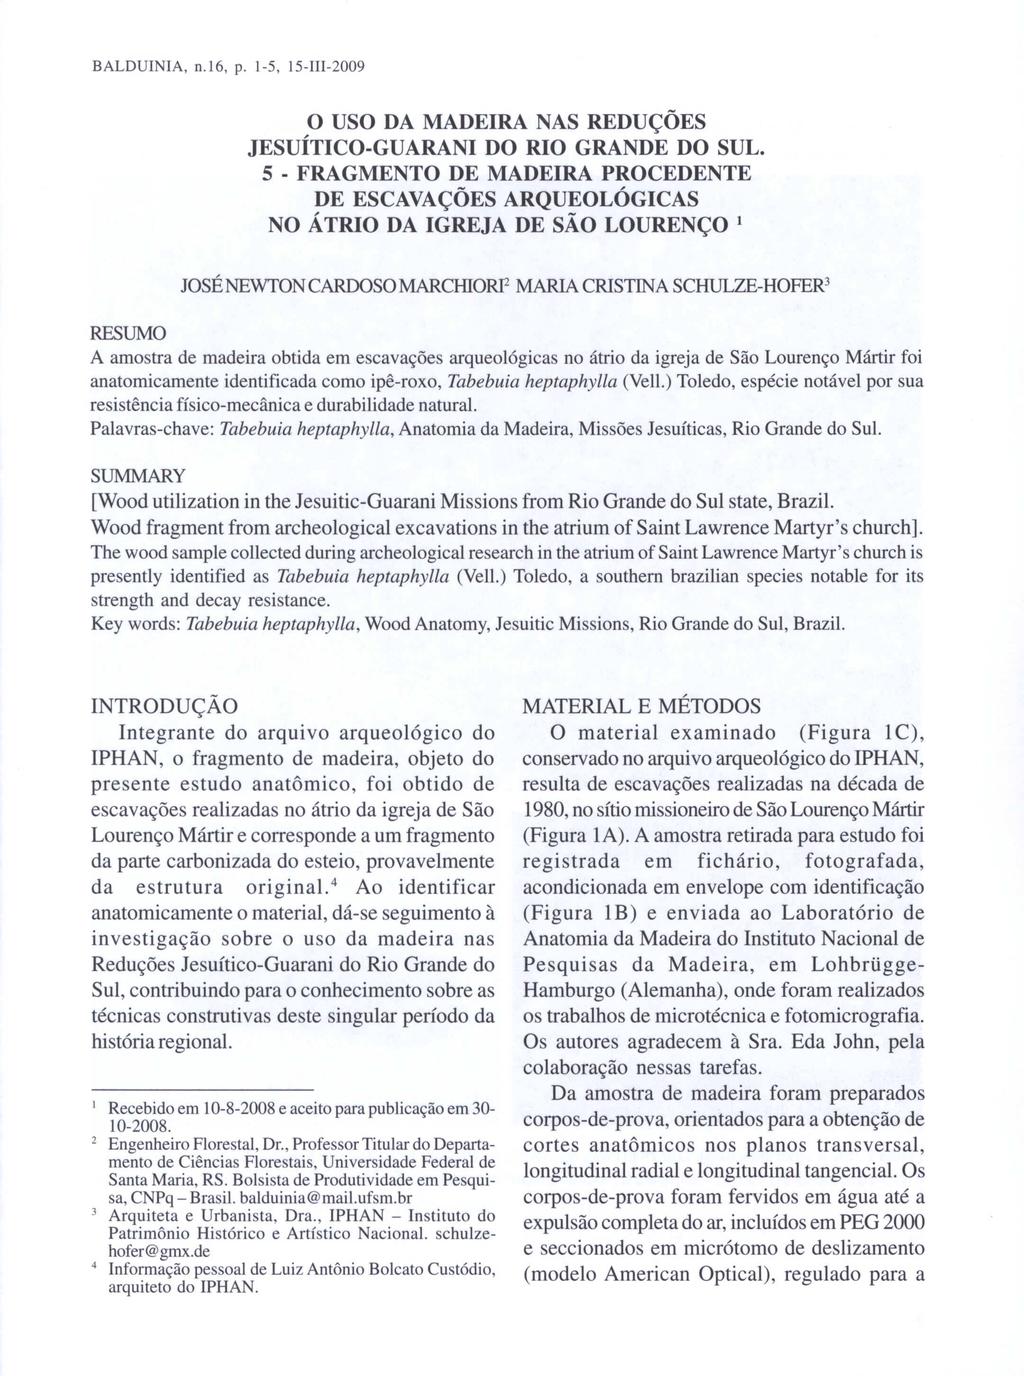 BALDUINIA. 0.16, p. 1-5, ls-1i1-2009 o USO DA MADEIRA NAS REDUÇÕES JESUÍTICO-GUARANI DO RIO GRANDE DO SUL.